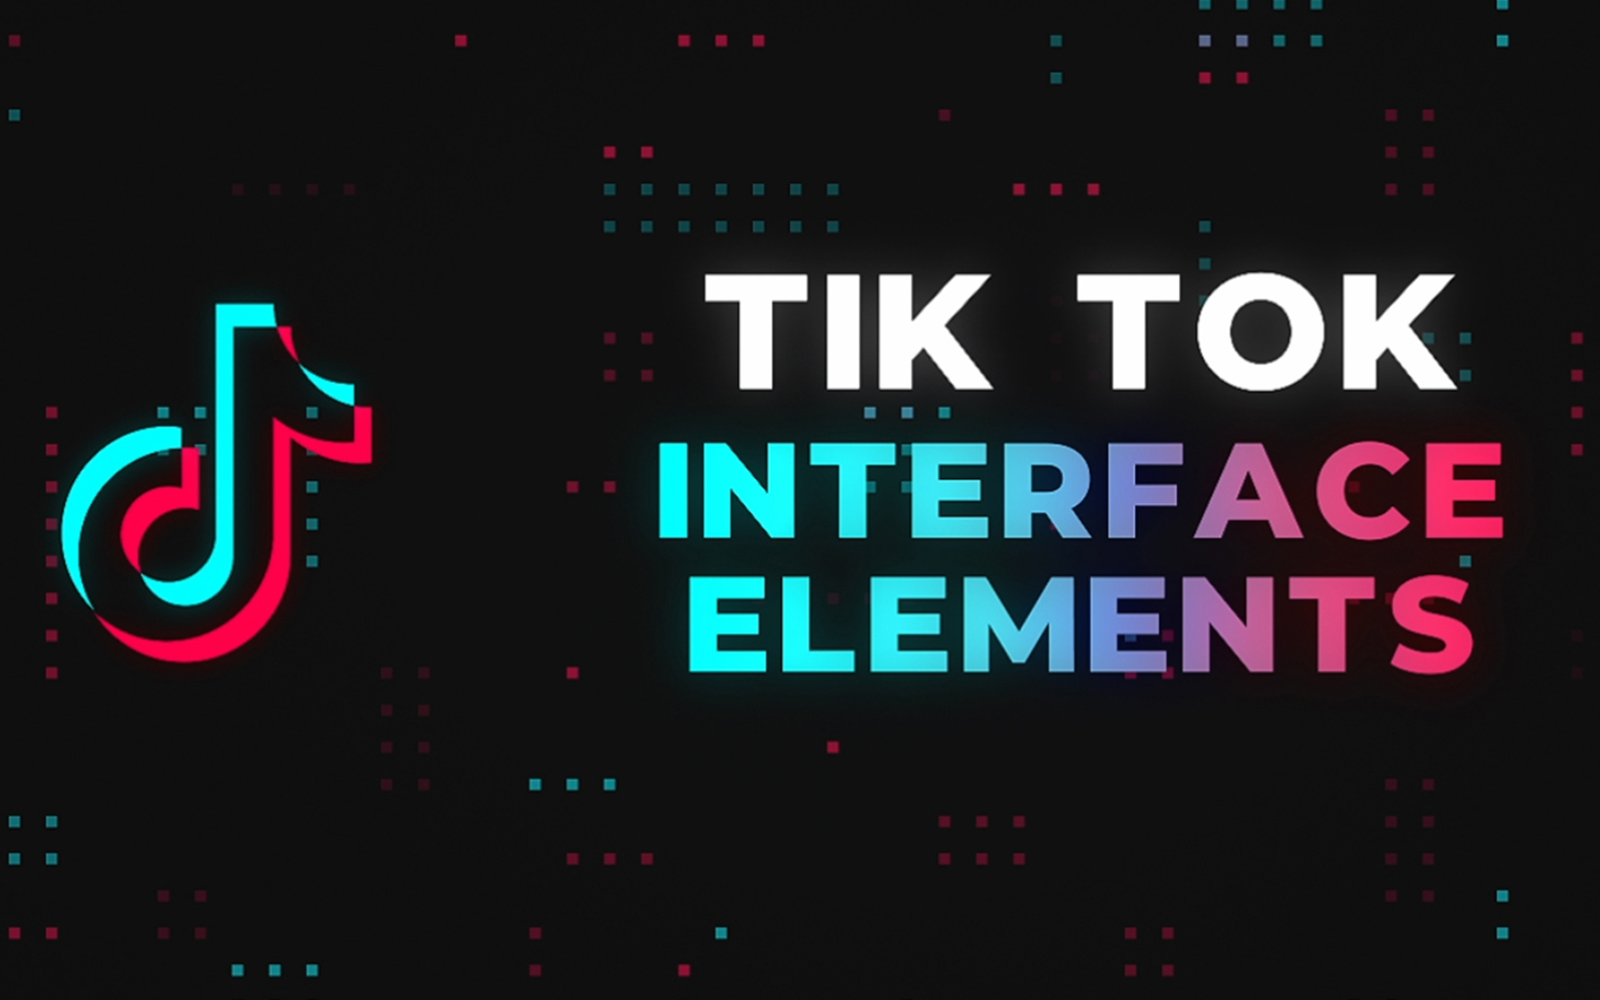 Tik Tok Interface Elements - MOGRT